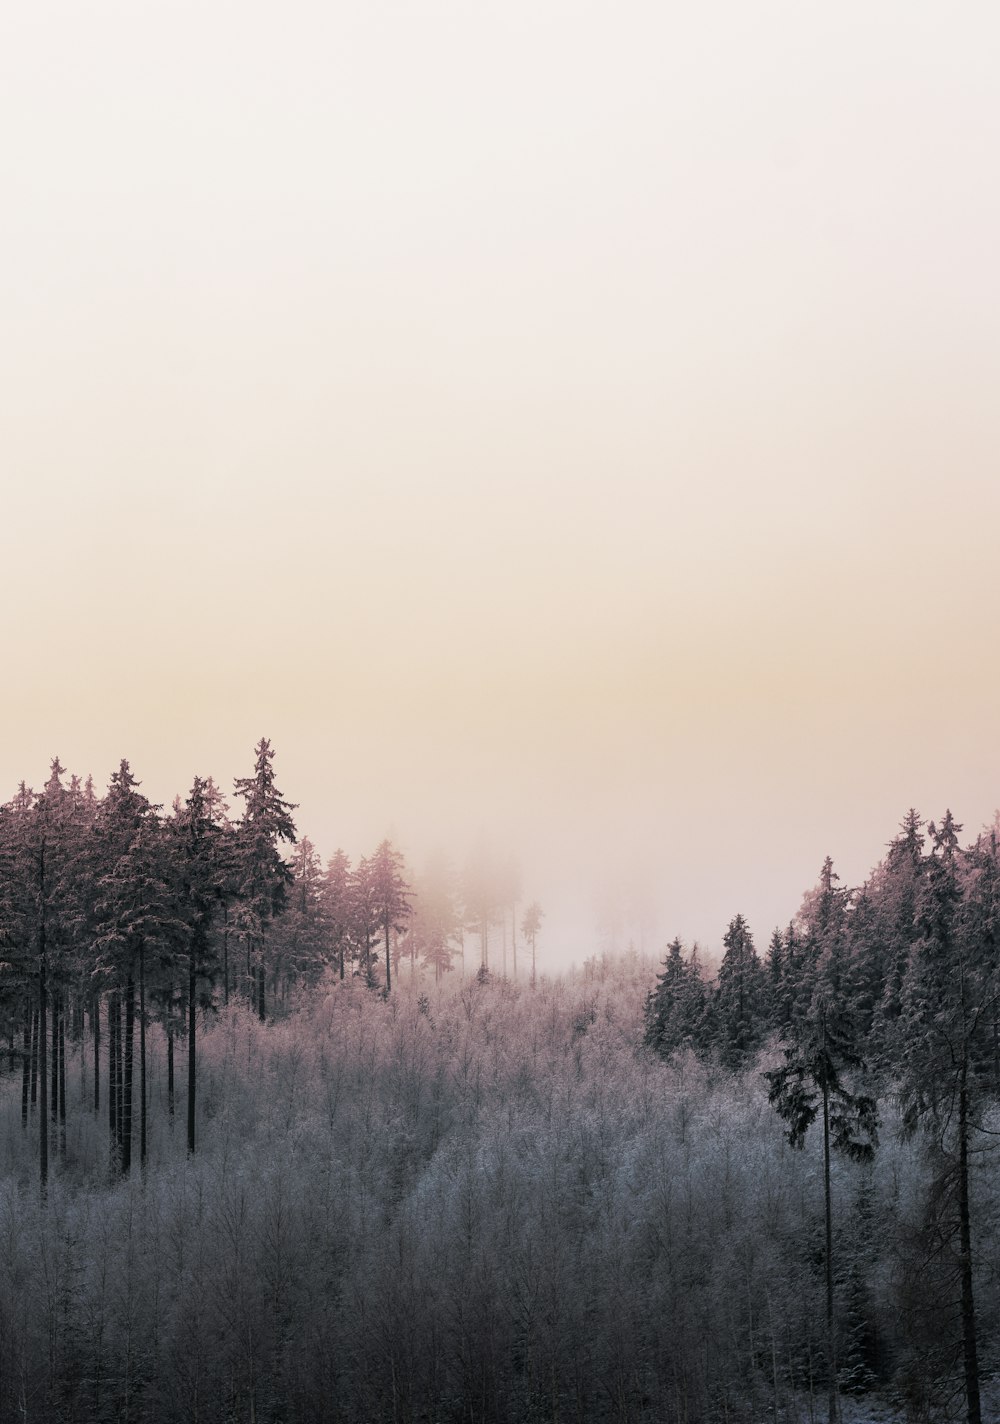 alberi su terreno coperto di neve durante il tramonto